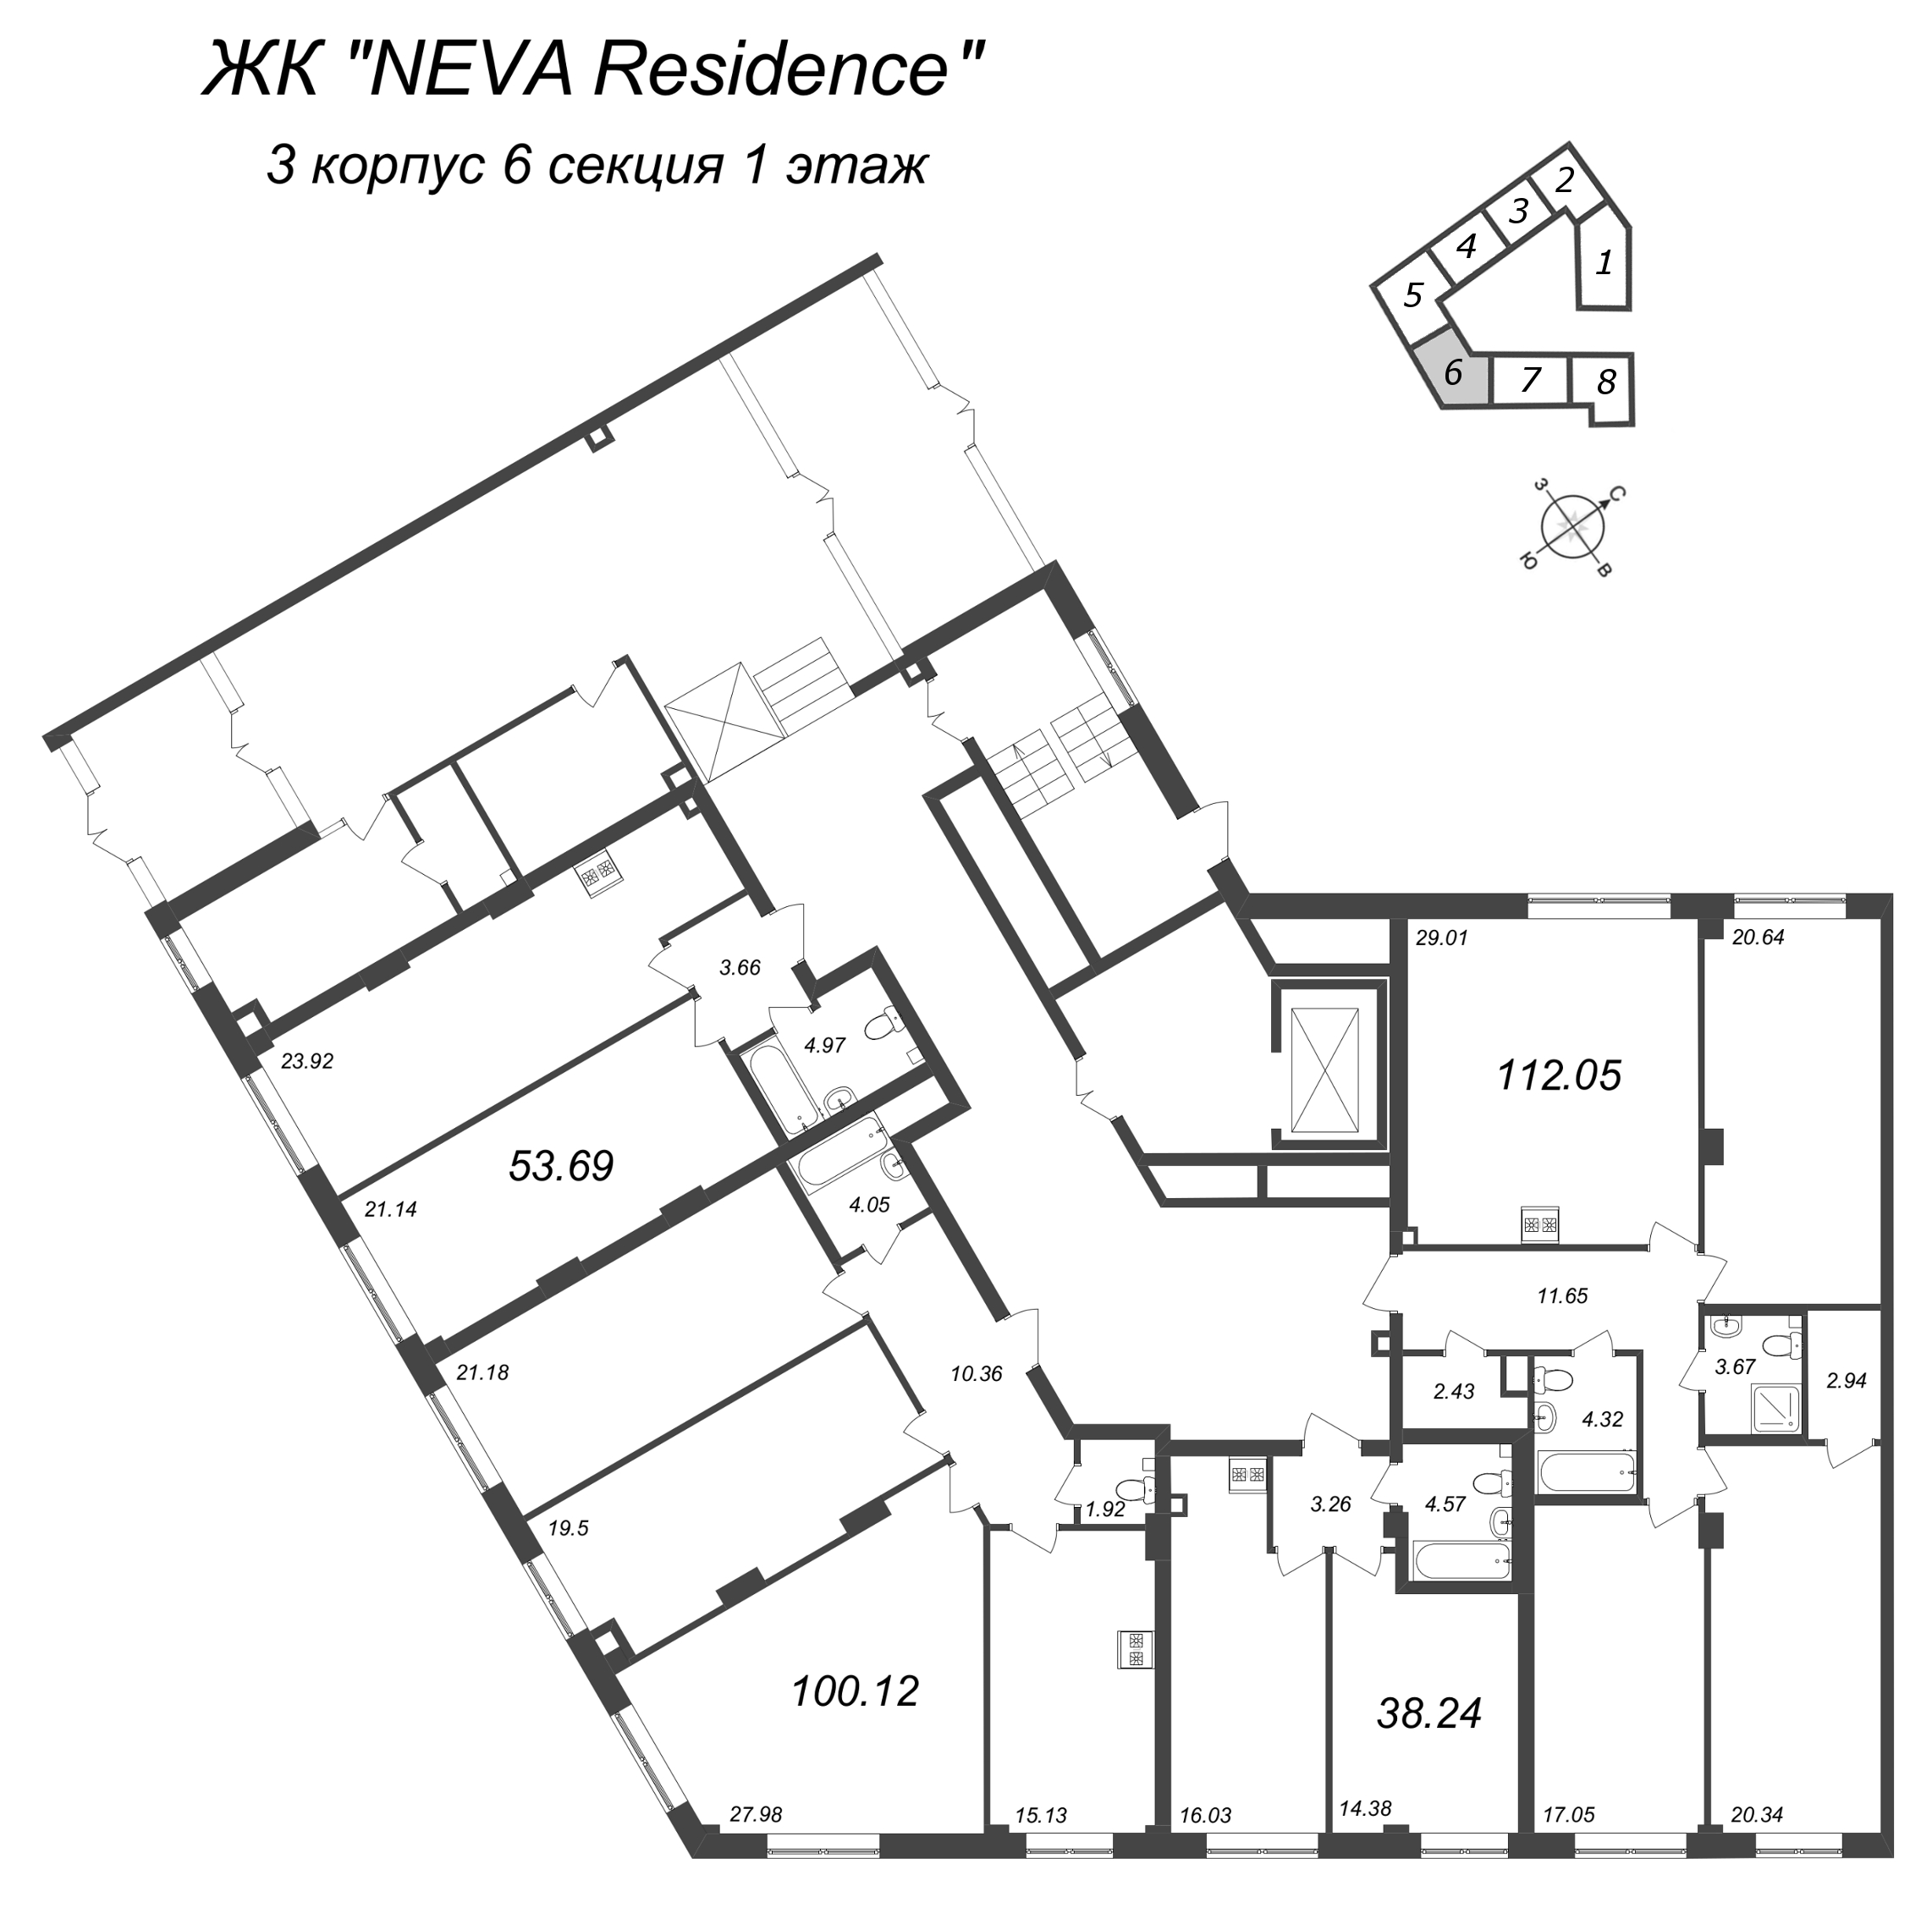 4-комнатная (Евро) квартира, 100.12 м² в ЖК "Neva Residence" - планировка этажа